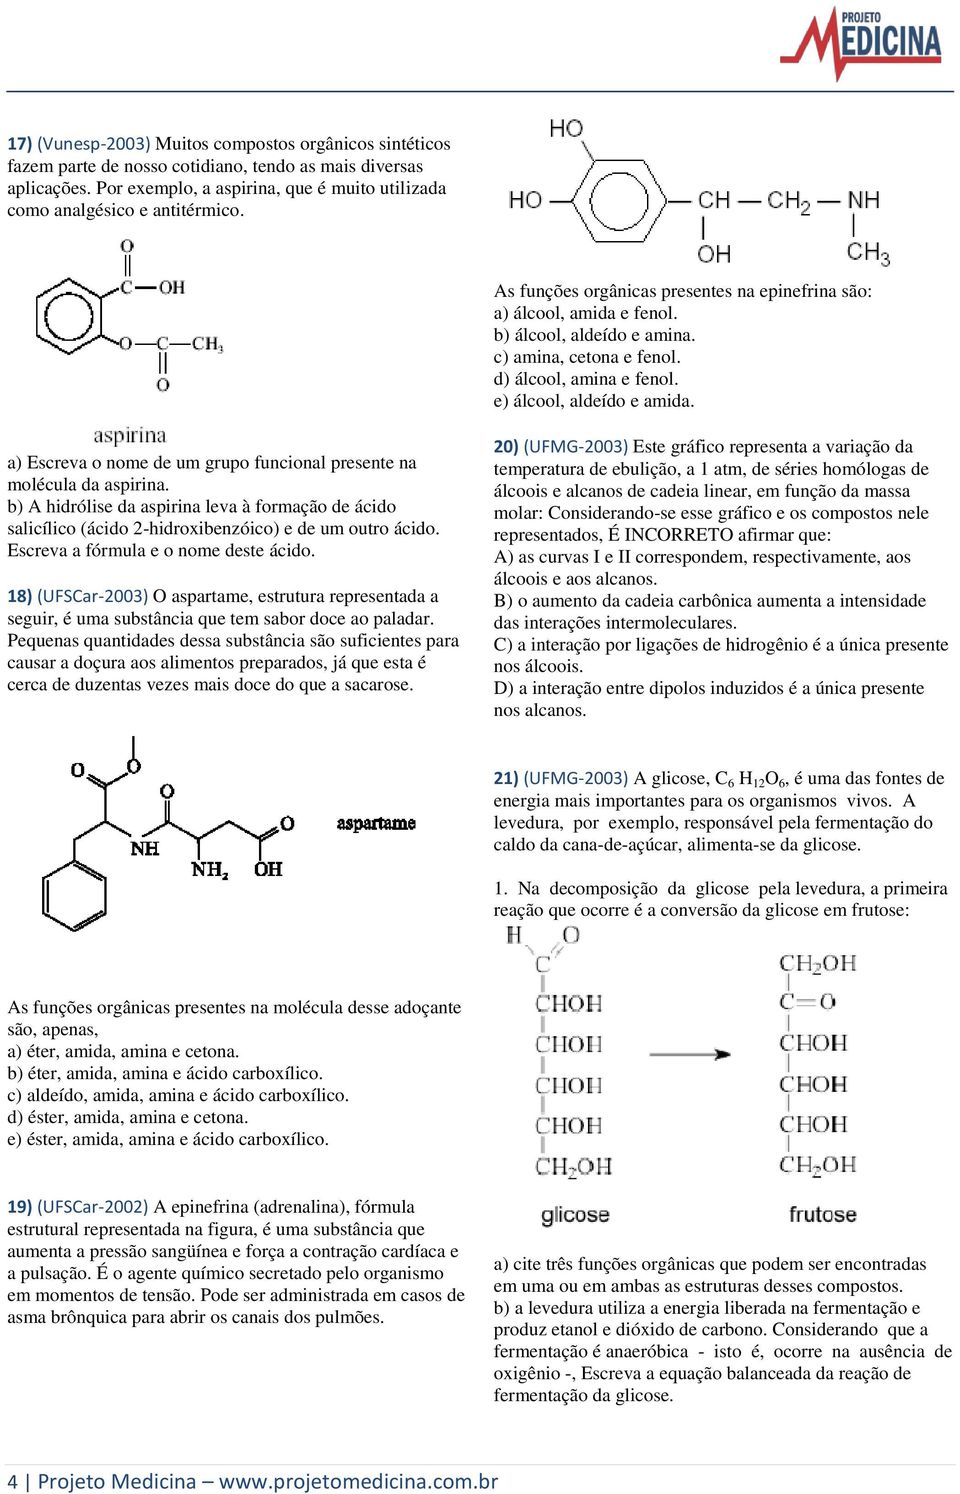 a) Escreva o nome de um grupo funcional presente na molécula da aspirina. b) A hidrólise da aspirina leva à formação de ácido salicílico (ácido 2-hidroxibenzóico) e de um outro ácido.